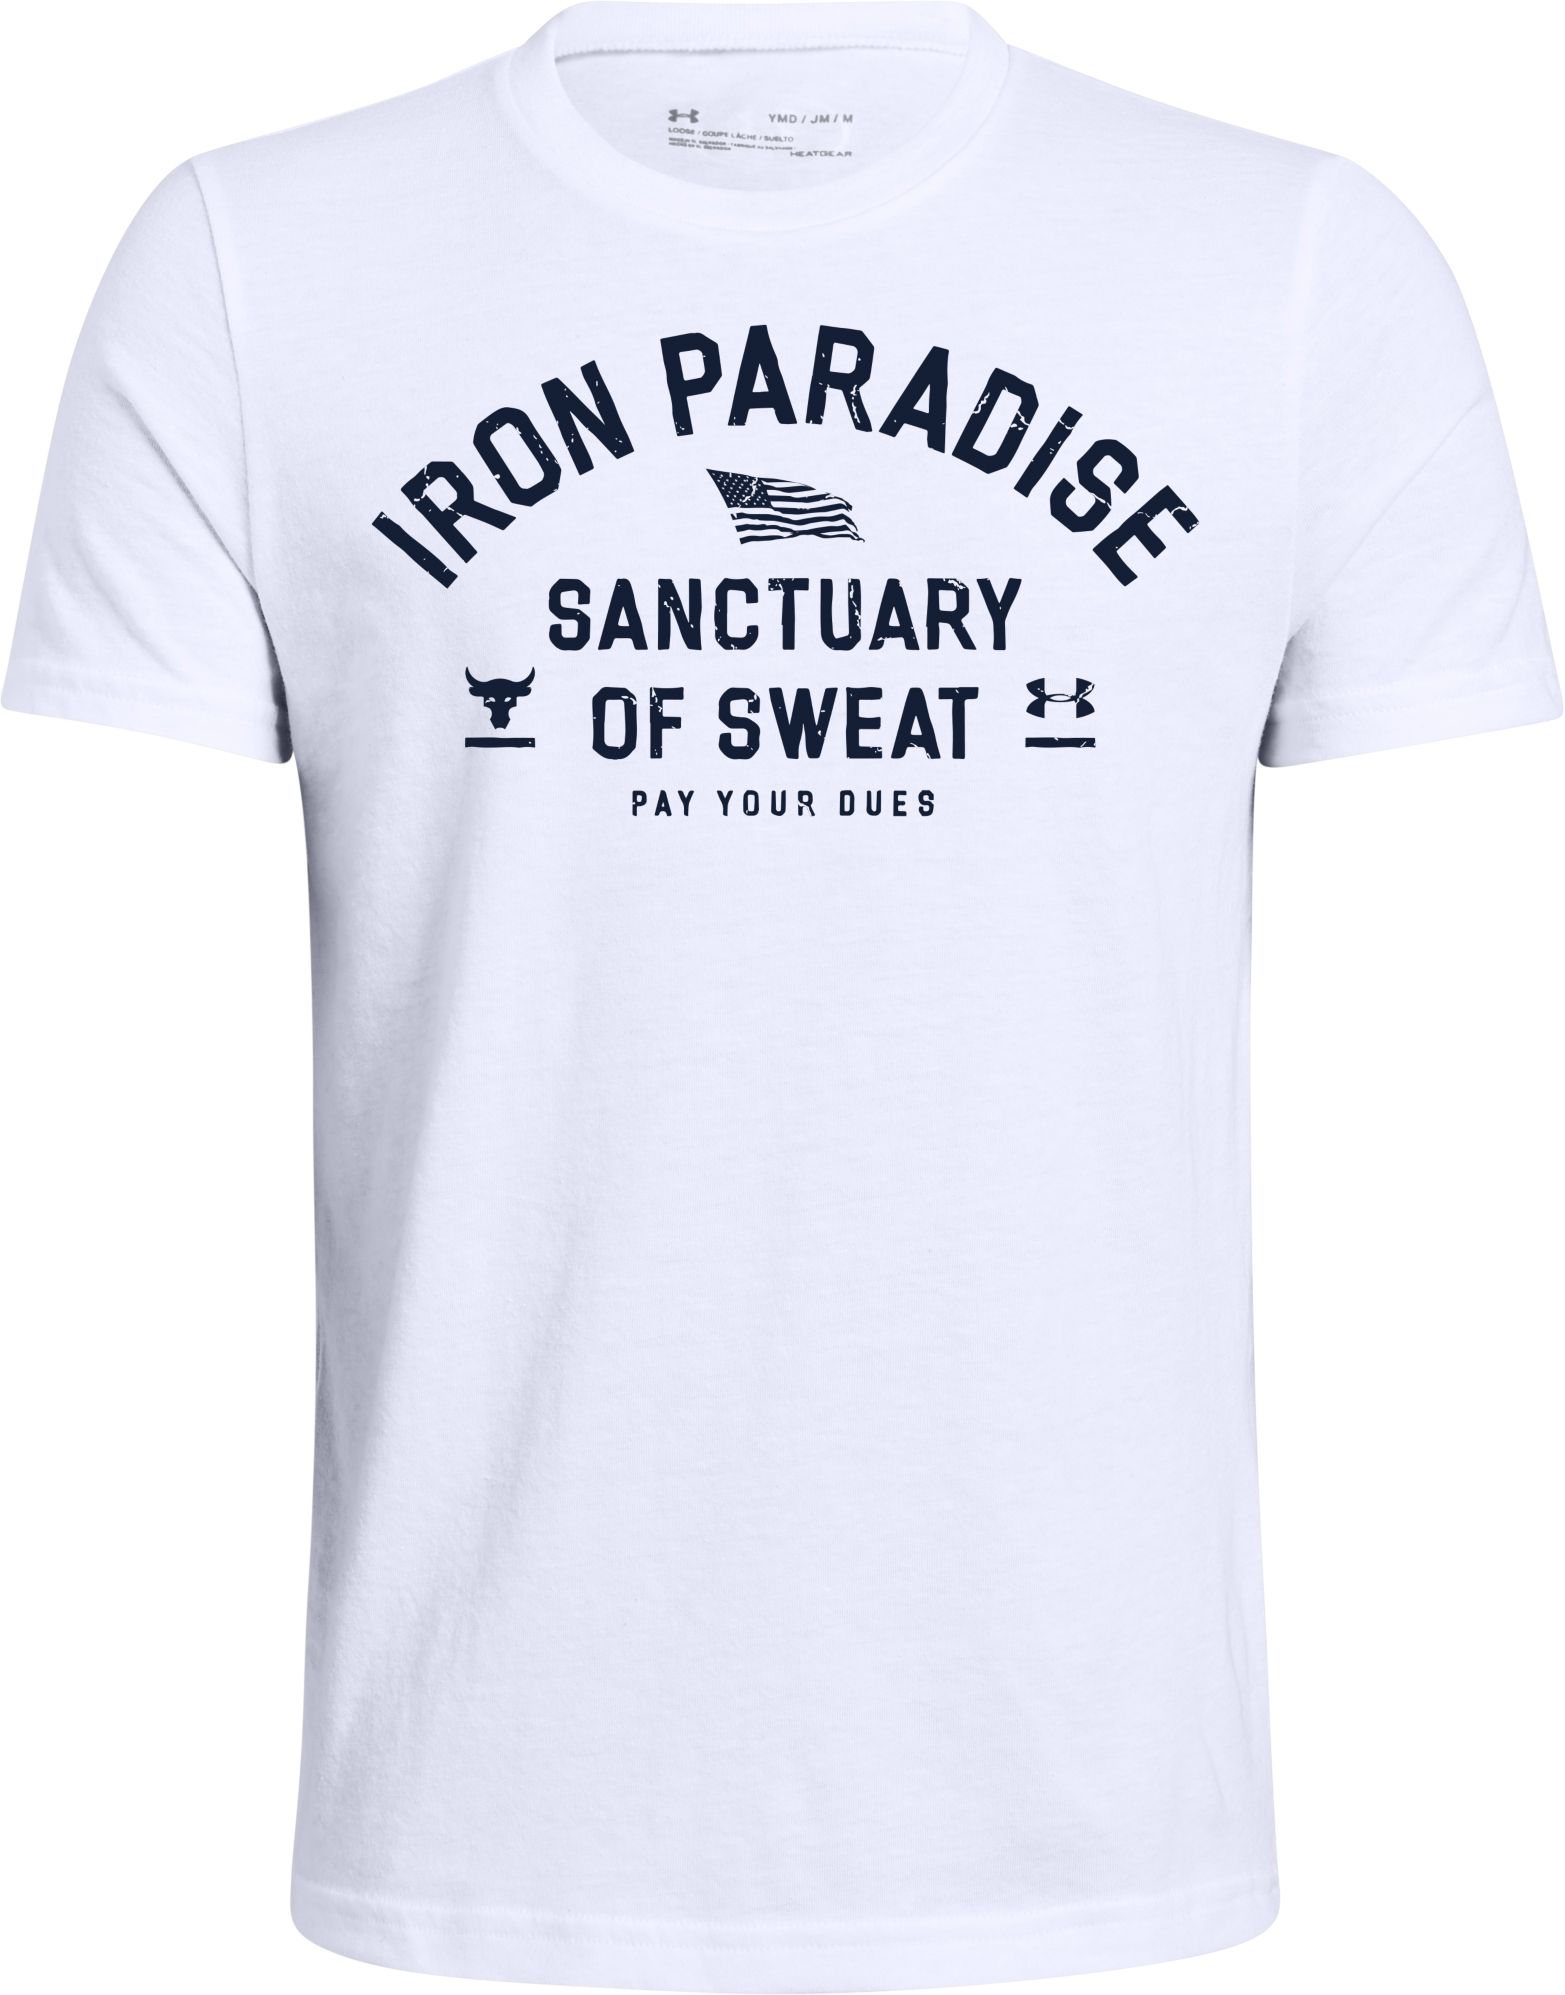 iron paradise t shirt